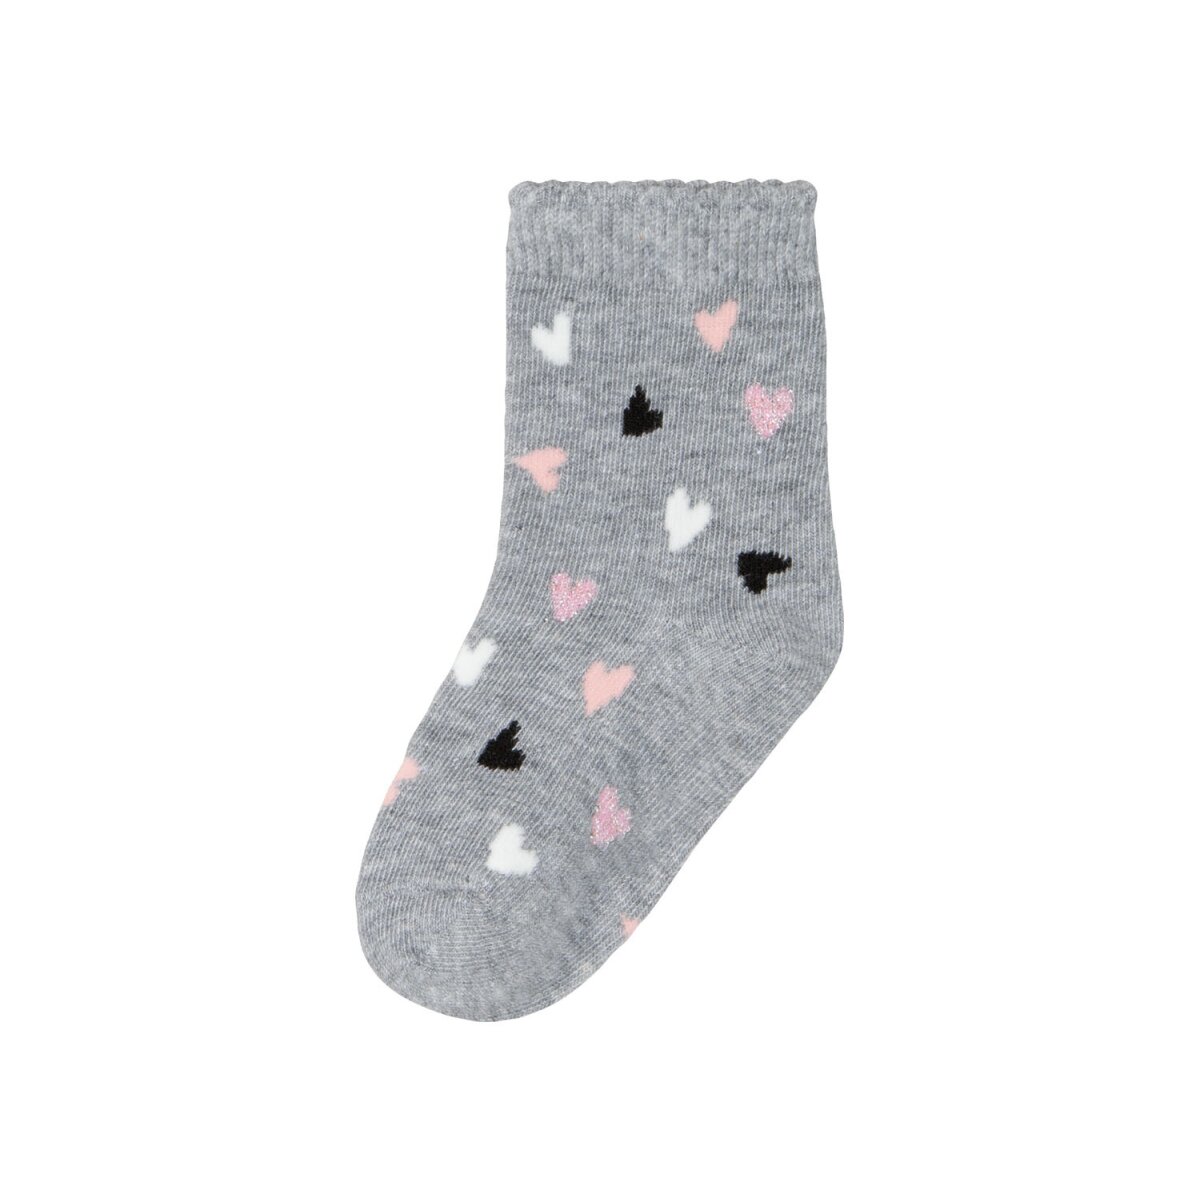 Mädchen Socken 5,00 (grau/dunkelrosa/anthrazit, mit 7 Kleinkinder 19/22) B-, Paar - lupilu® € Bio-Baumwolle,